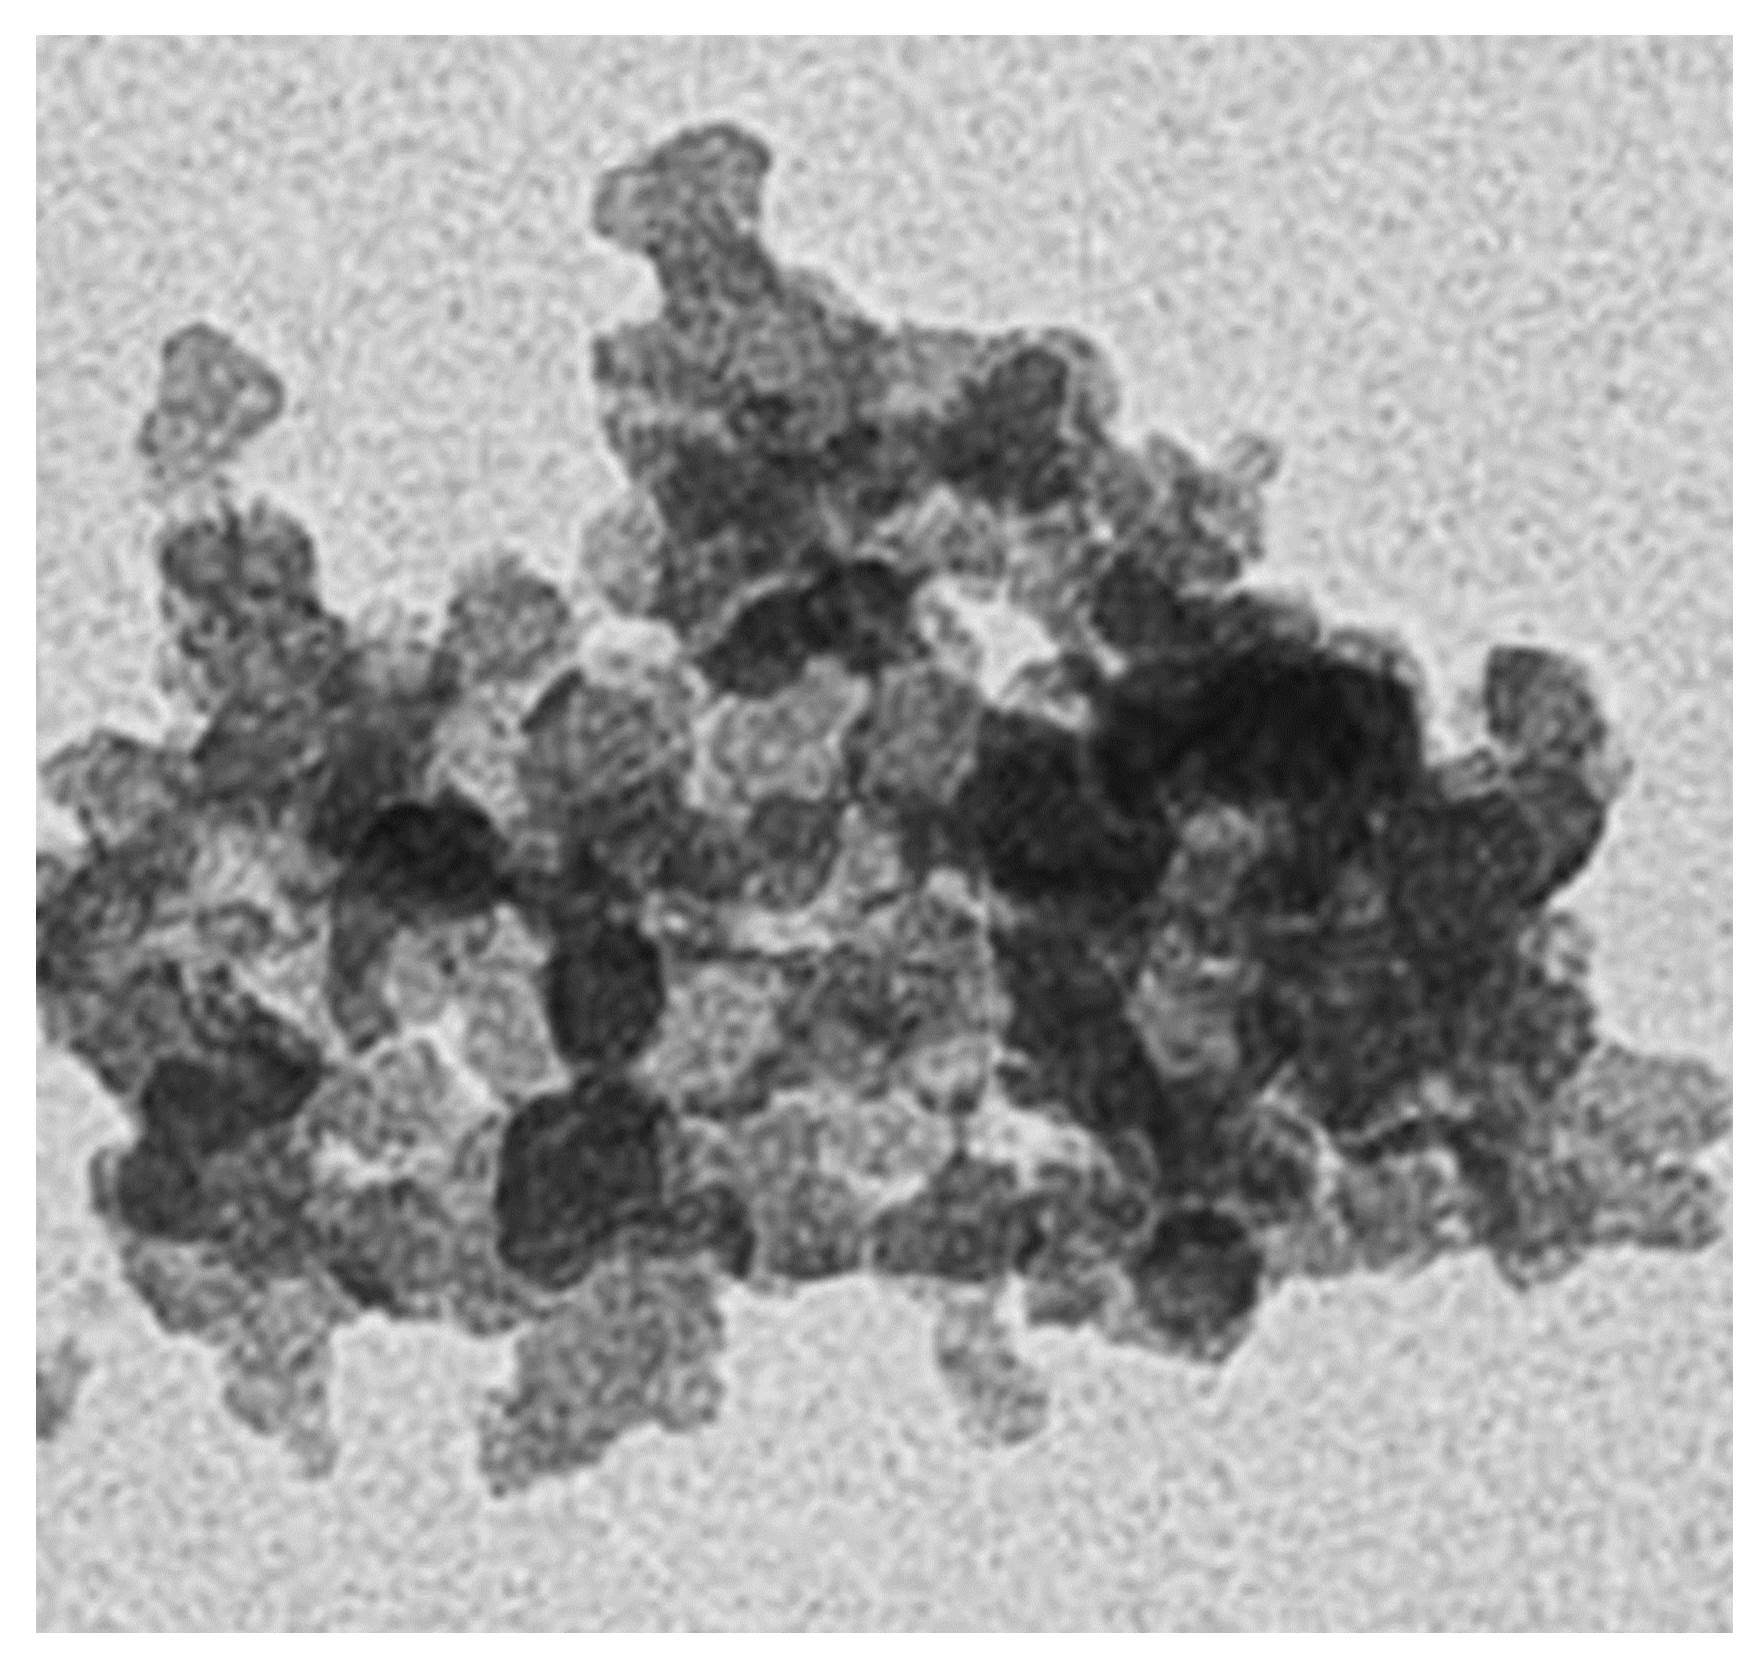 Nanopartikel © Helmholtz Zentrum München